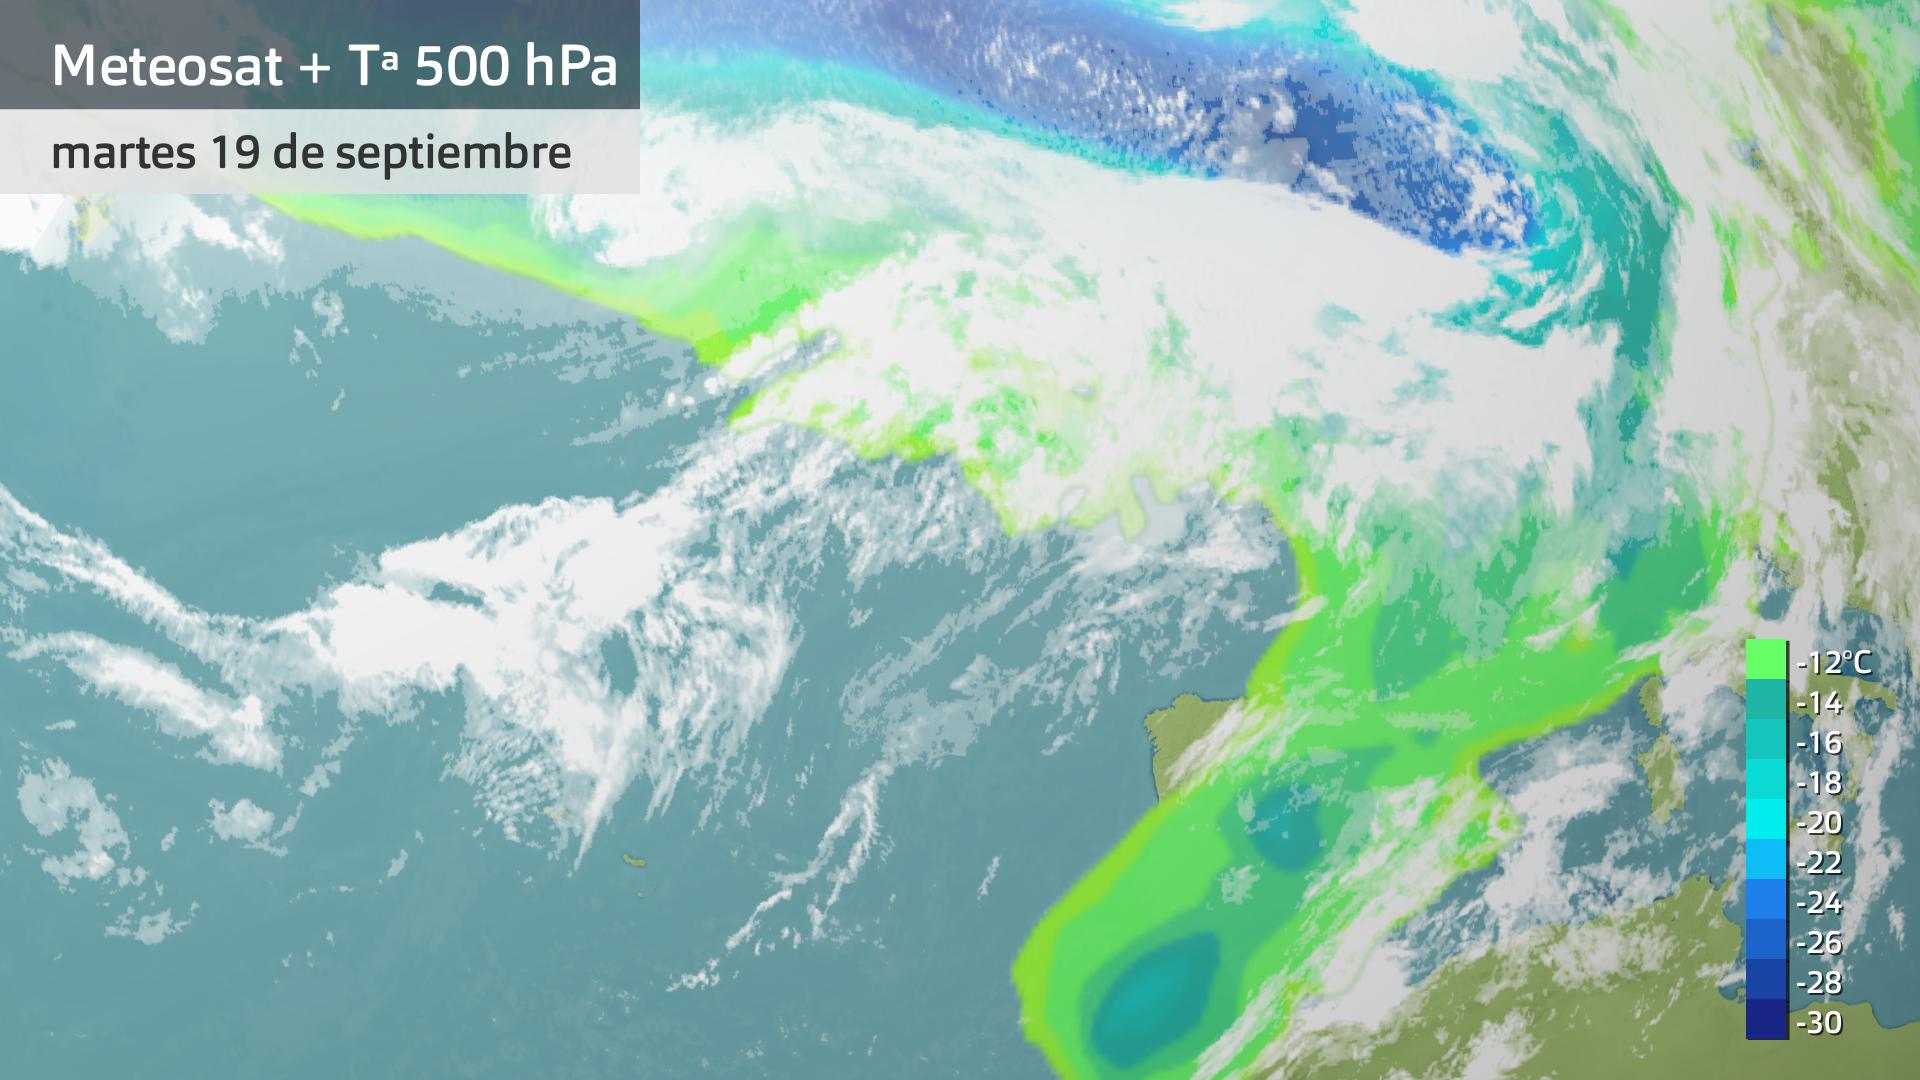 Imagen del Meteosat + temperatura a 500 hPa martes 19 de septiembre 5:15 h.